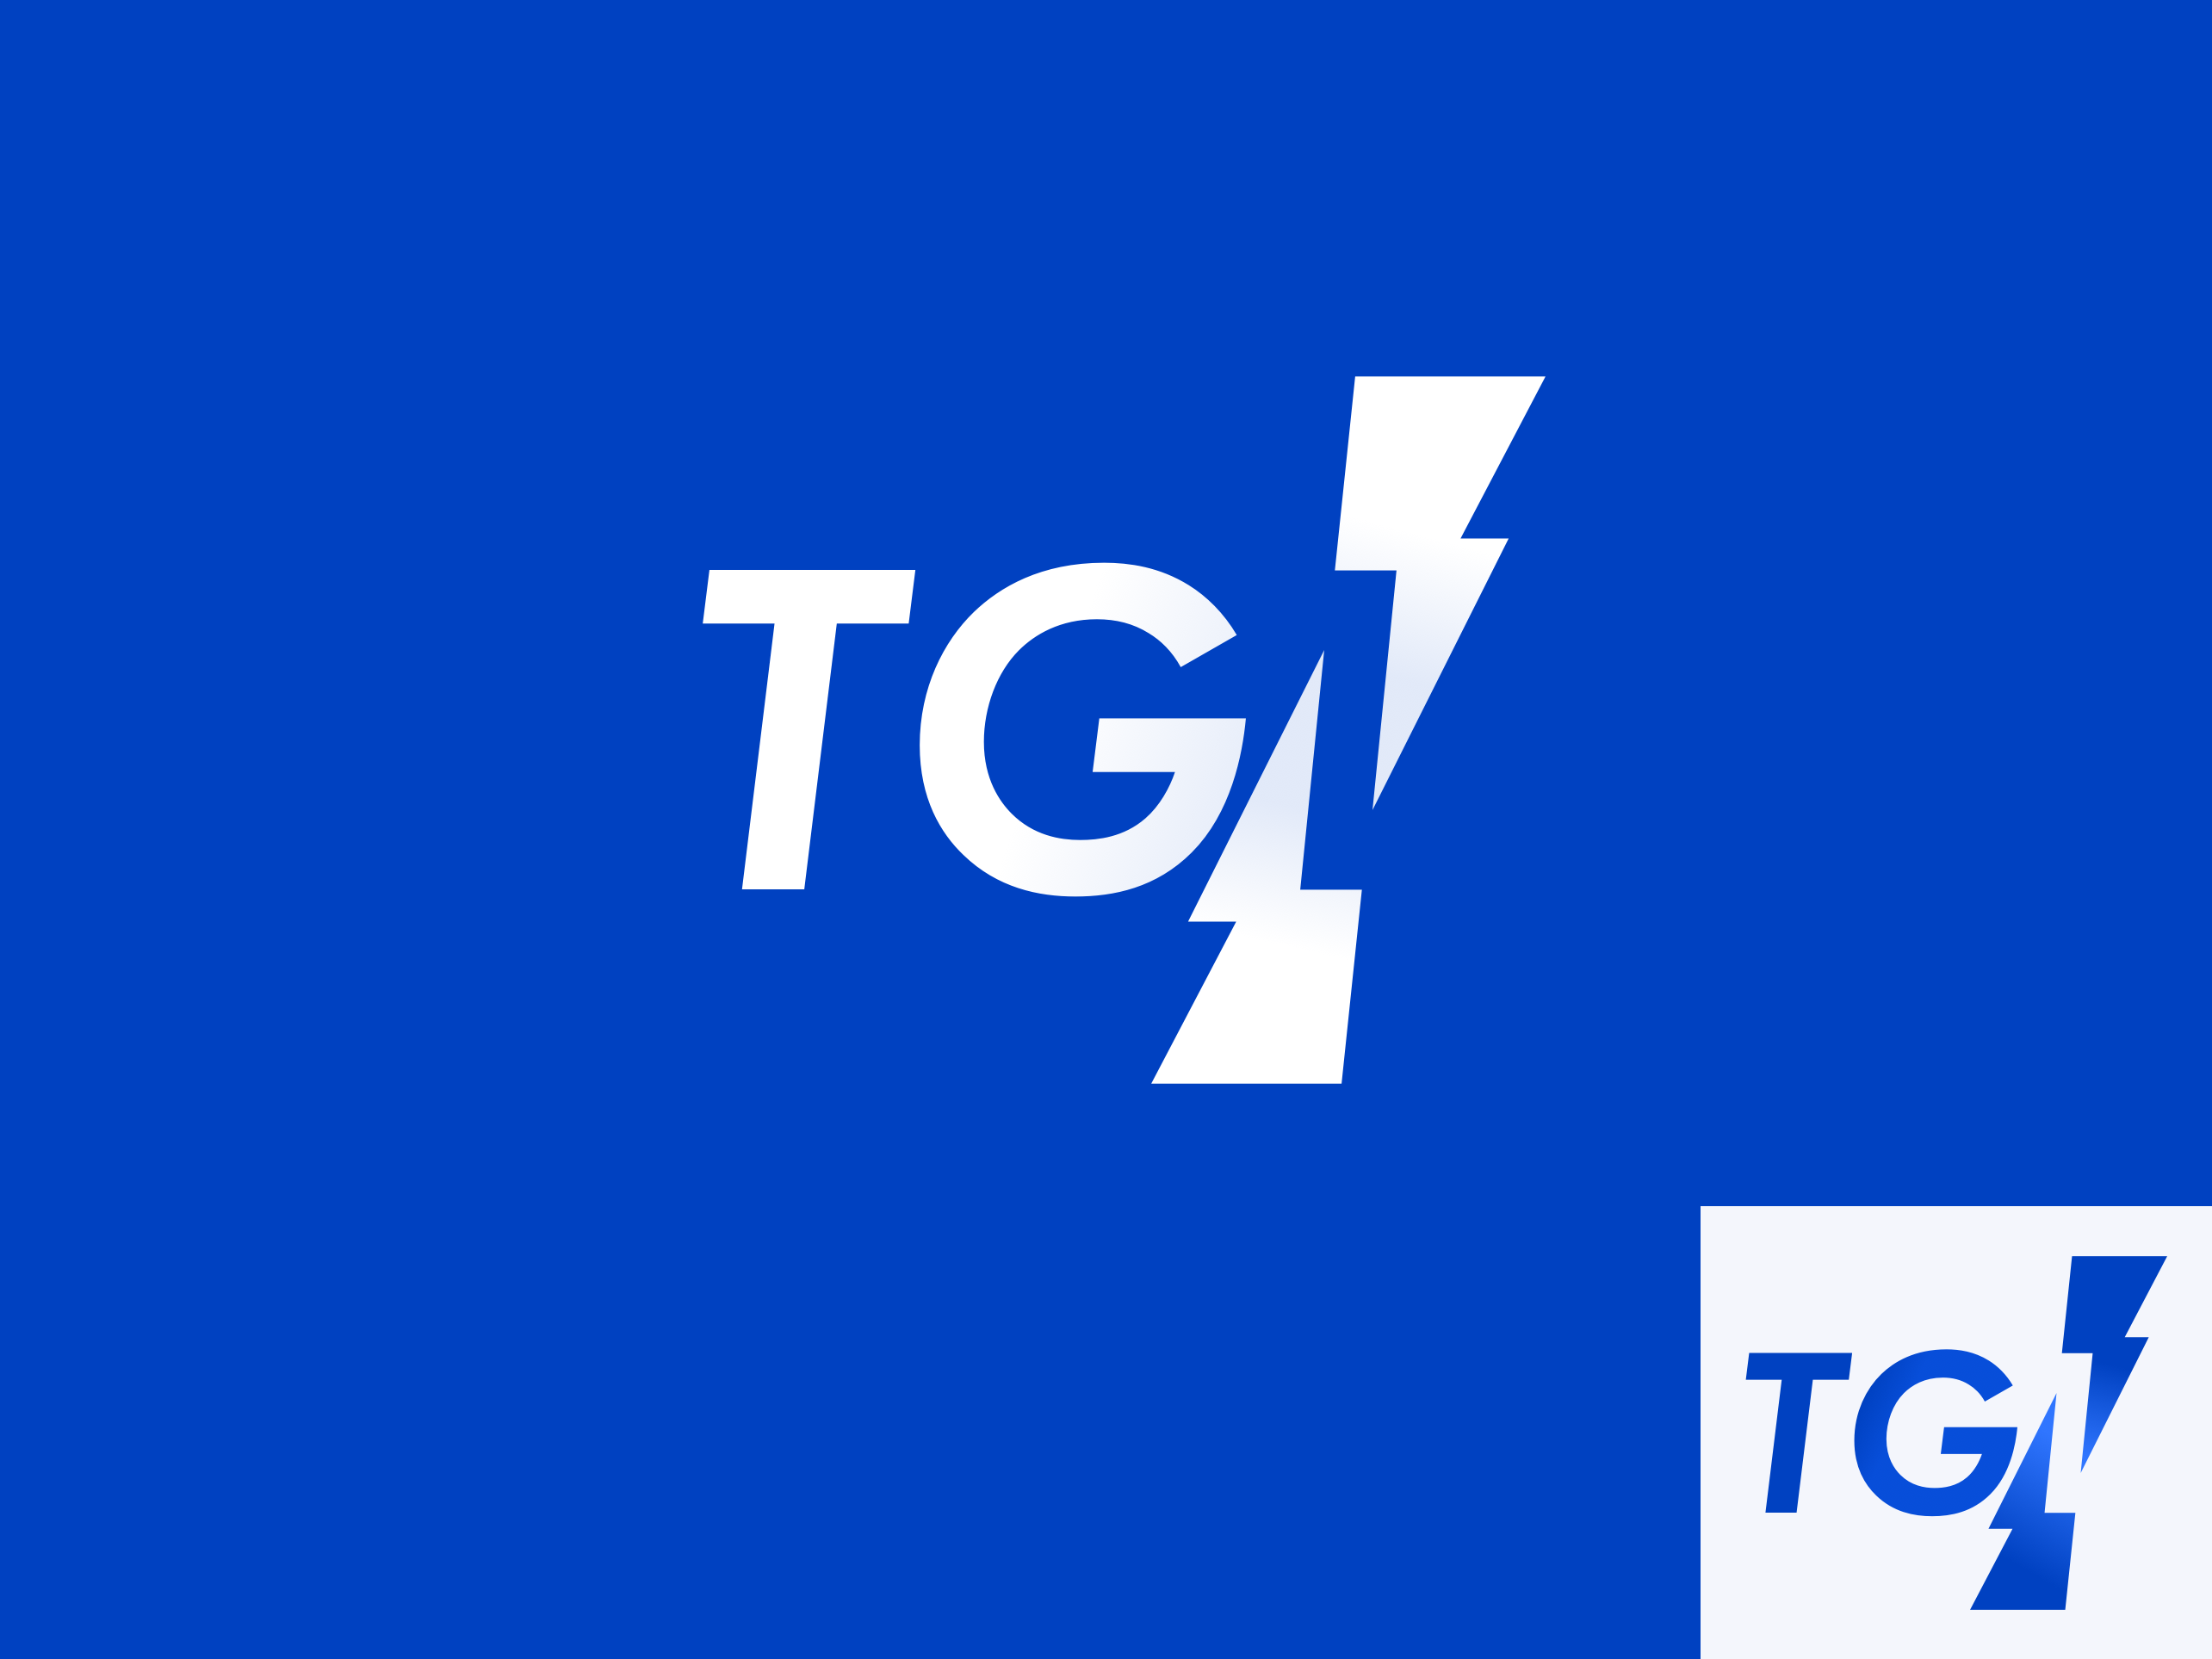 TGI Logo by Michael Bystryk on Dribbble